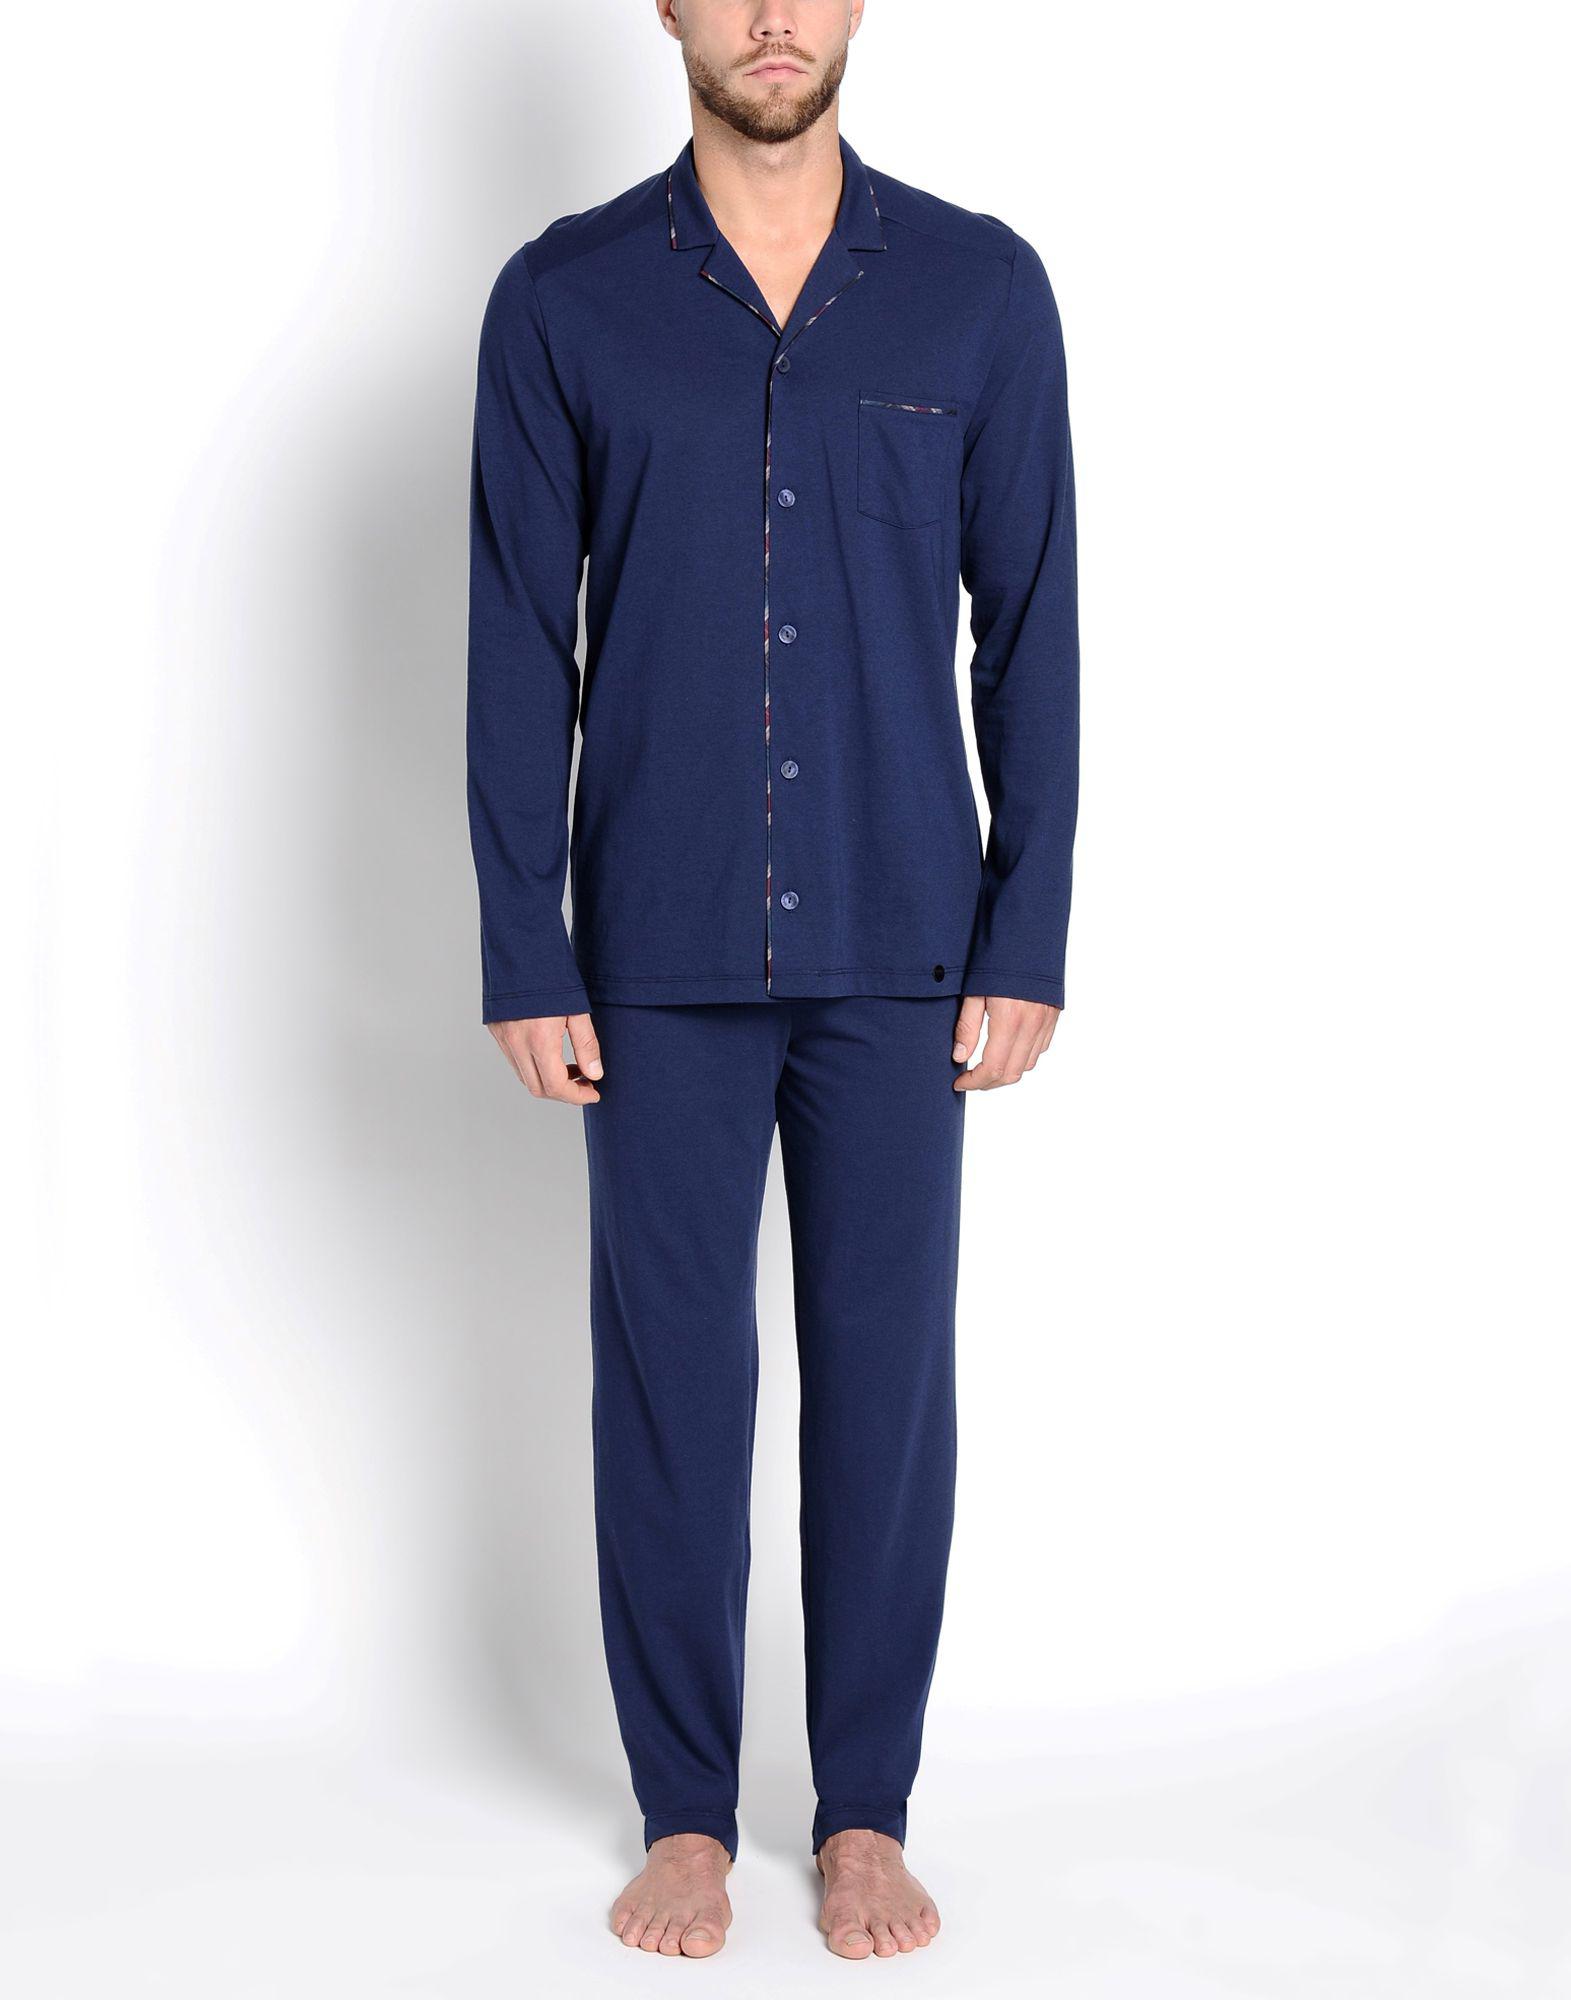 Lyst - Hanro Sleepwear in Blue for Men